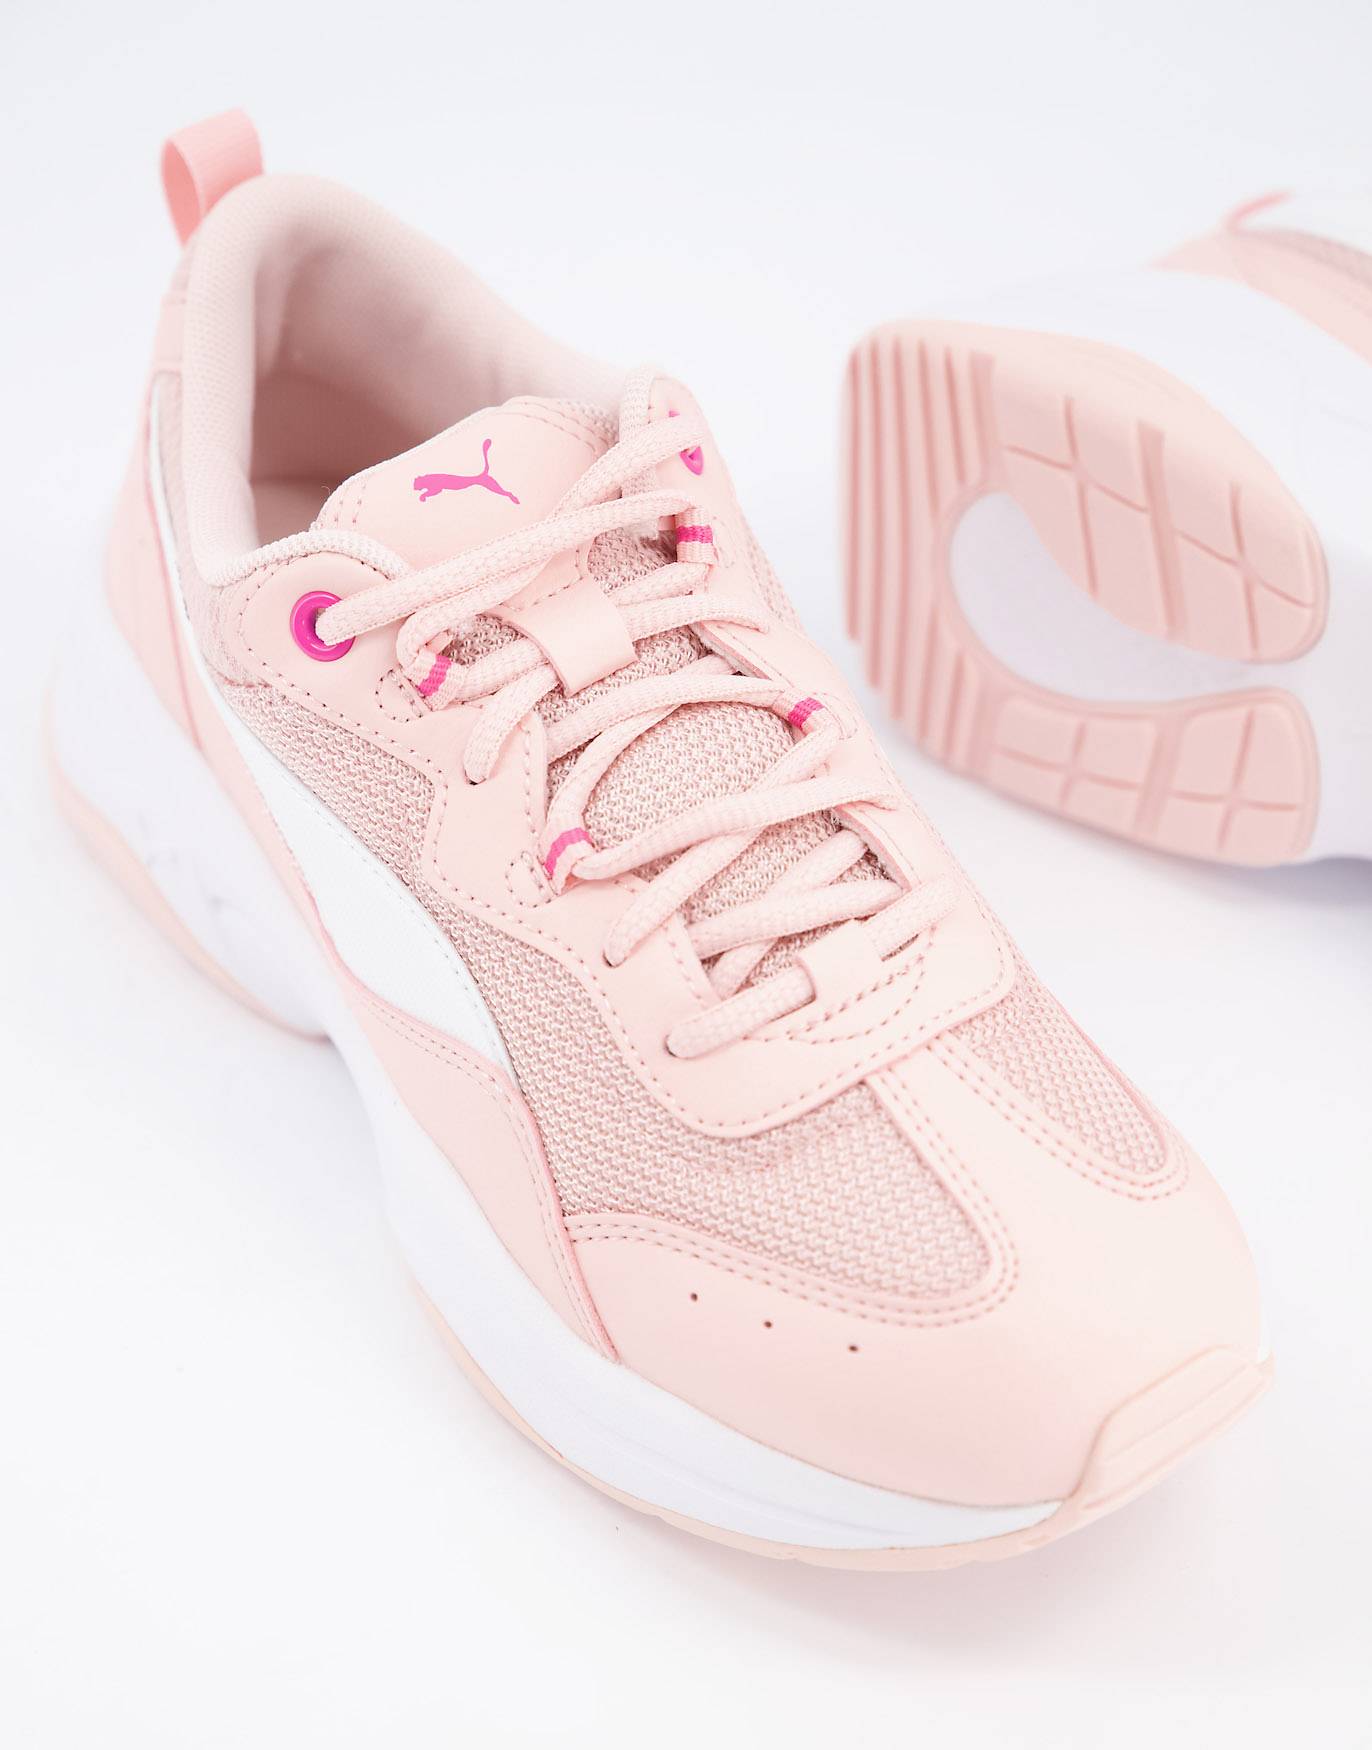 Puma розовые кроссовки